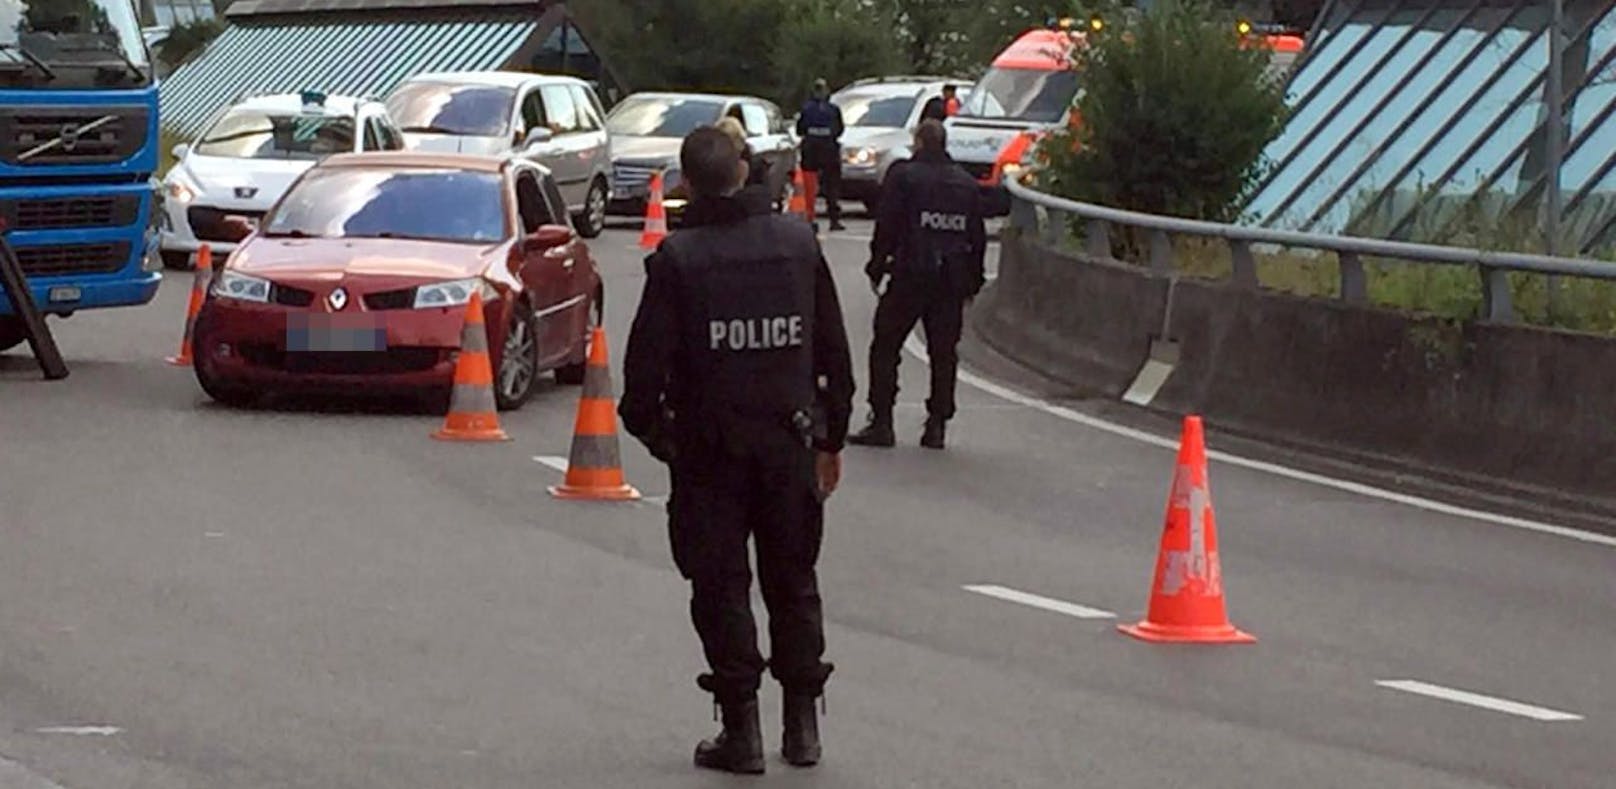 Schweizer Polizisten kontrollieren Autos.